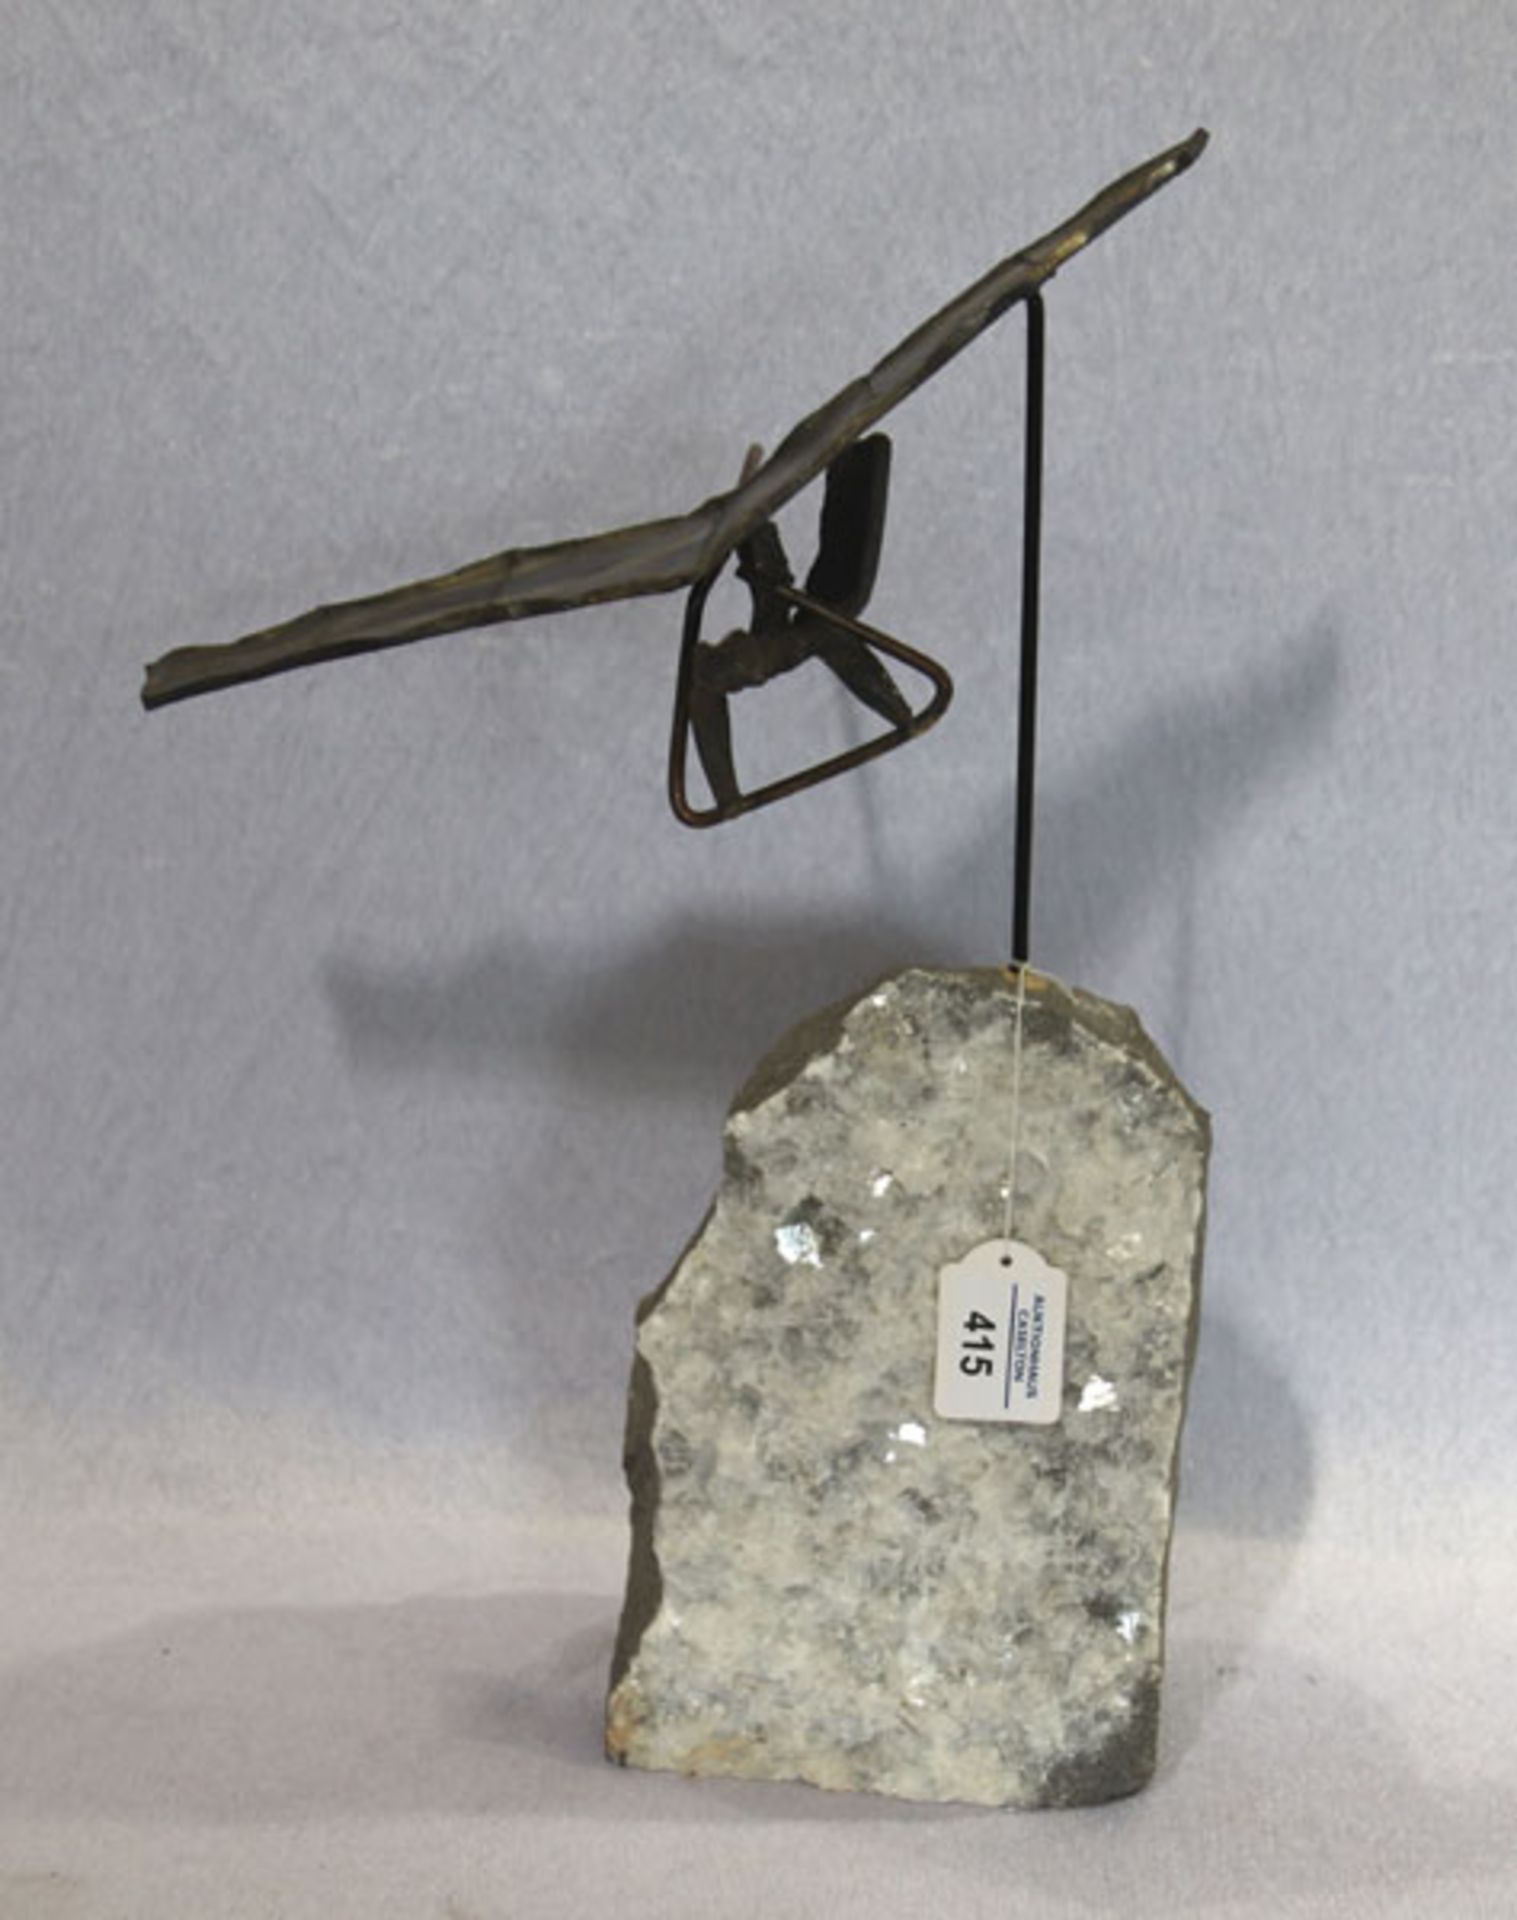 Drachenflieger aus Metall auf Quarzstein montiert, H 43 cm, B 32 cm, T 14 cm, ausgefallene